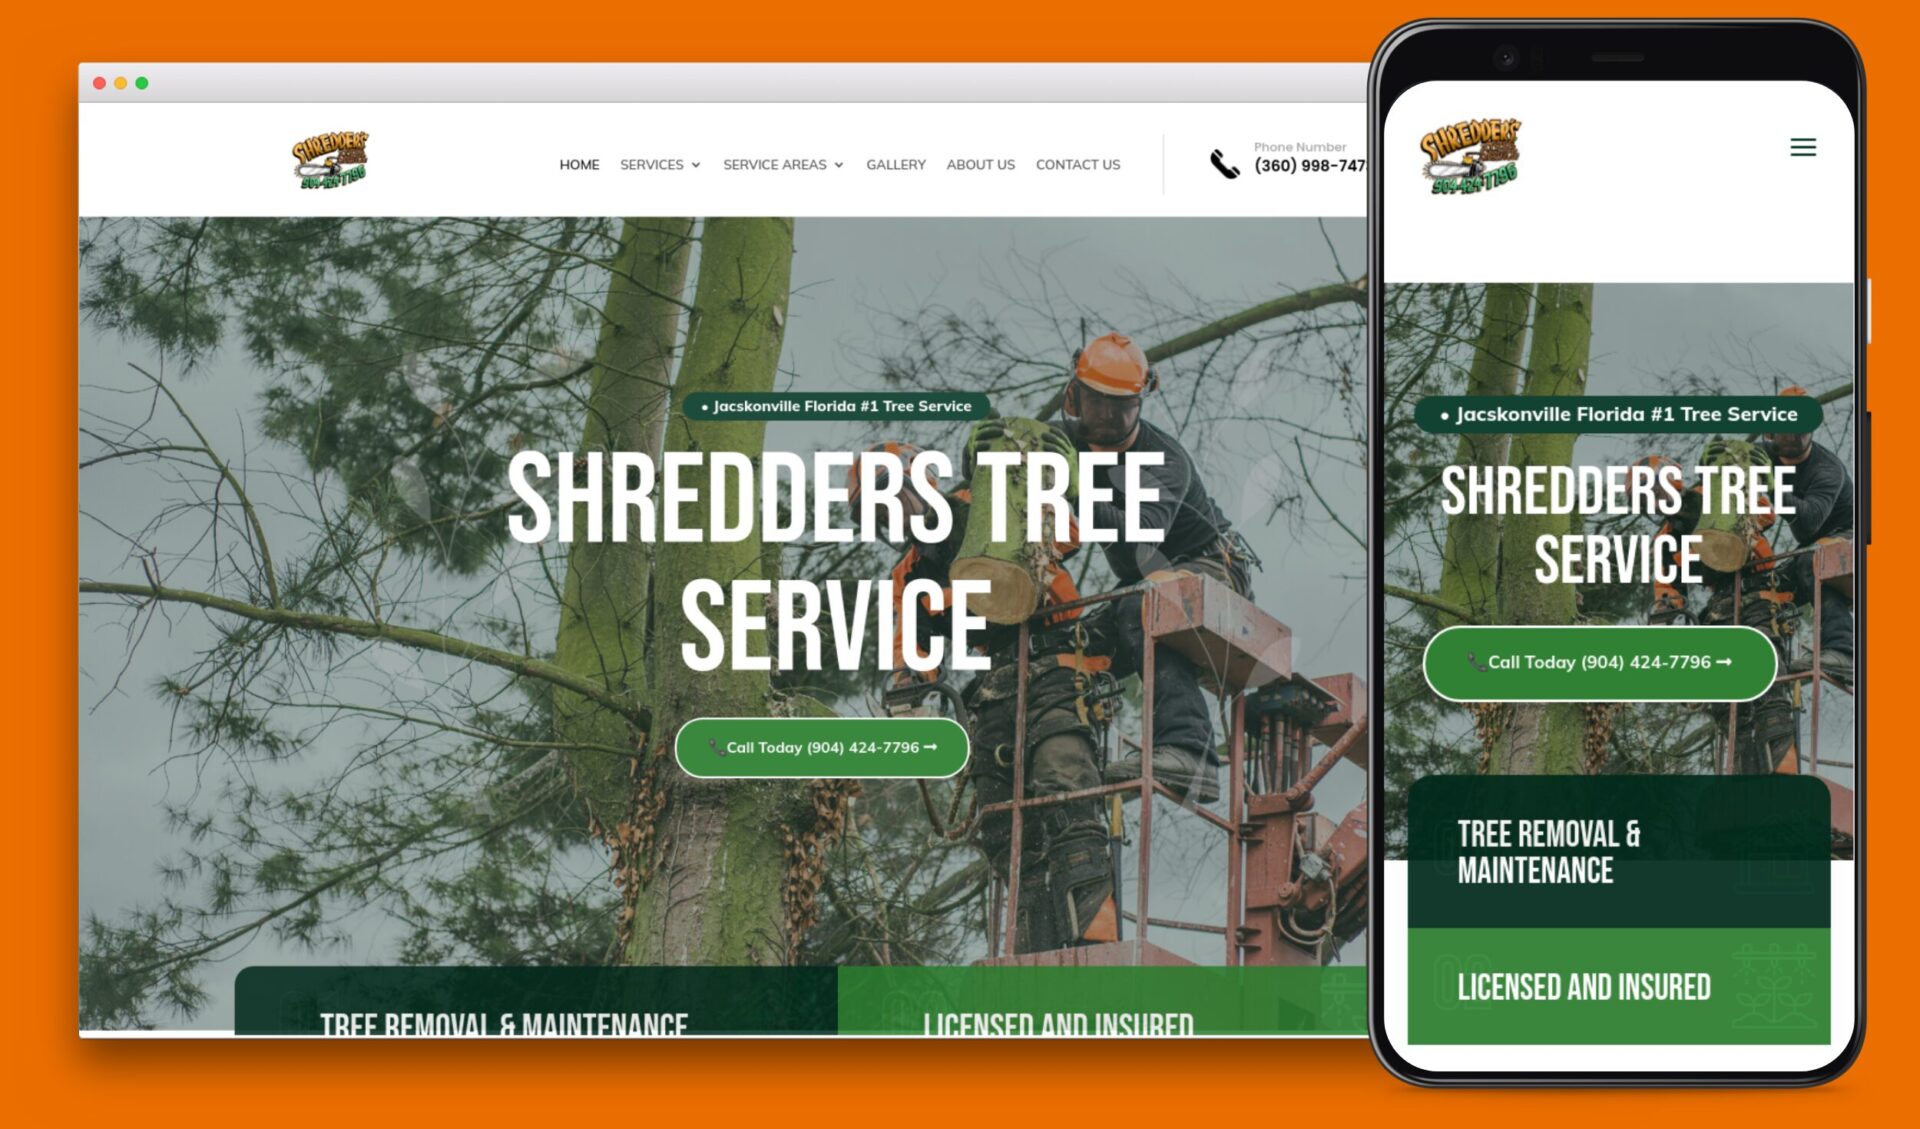 Shredder's Tree Service Website